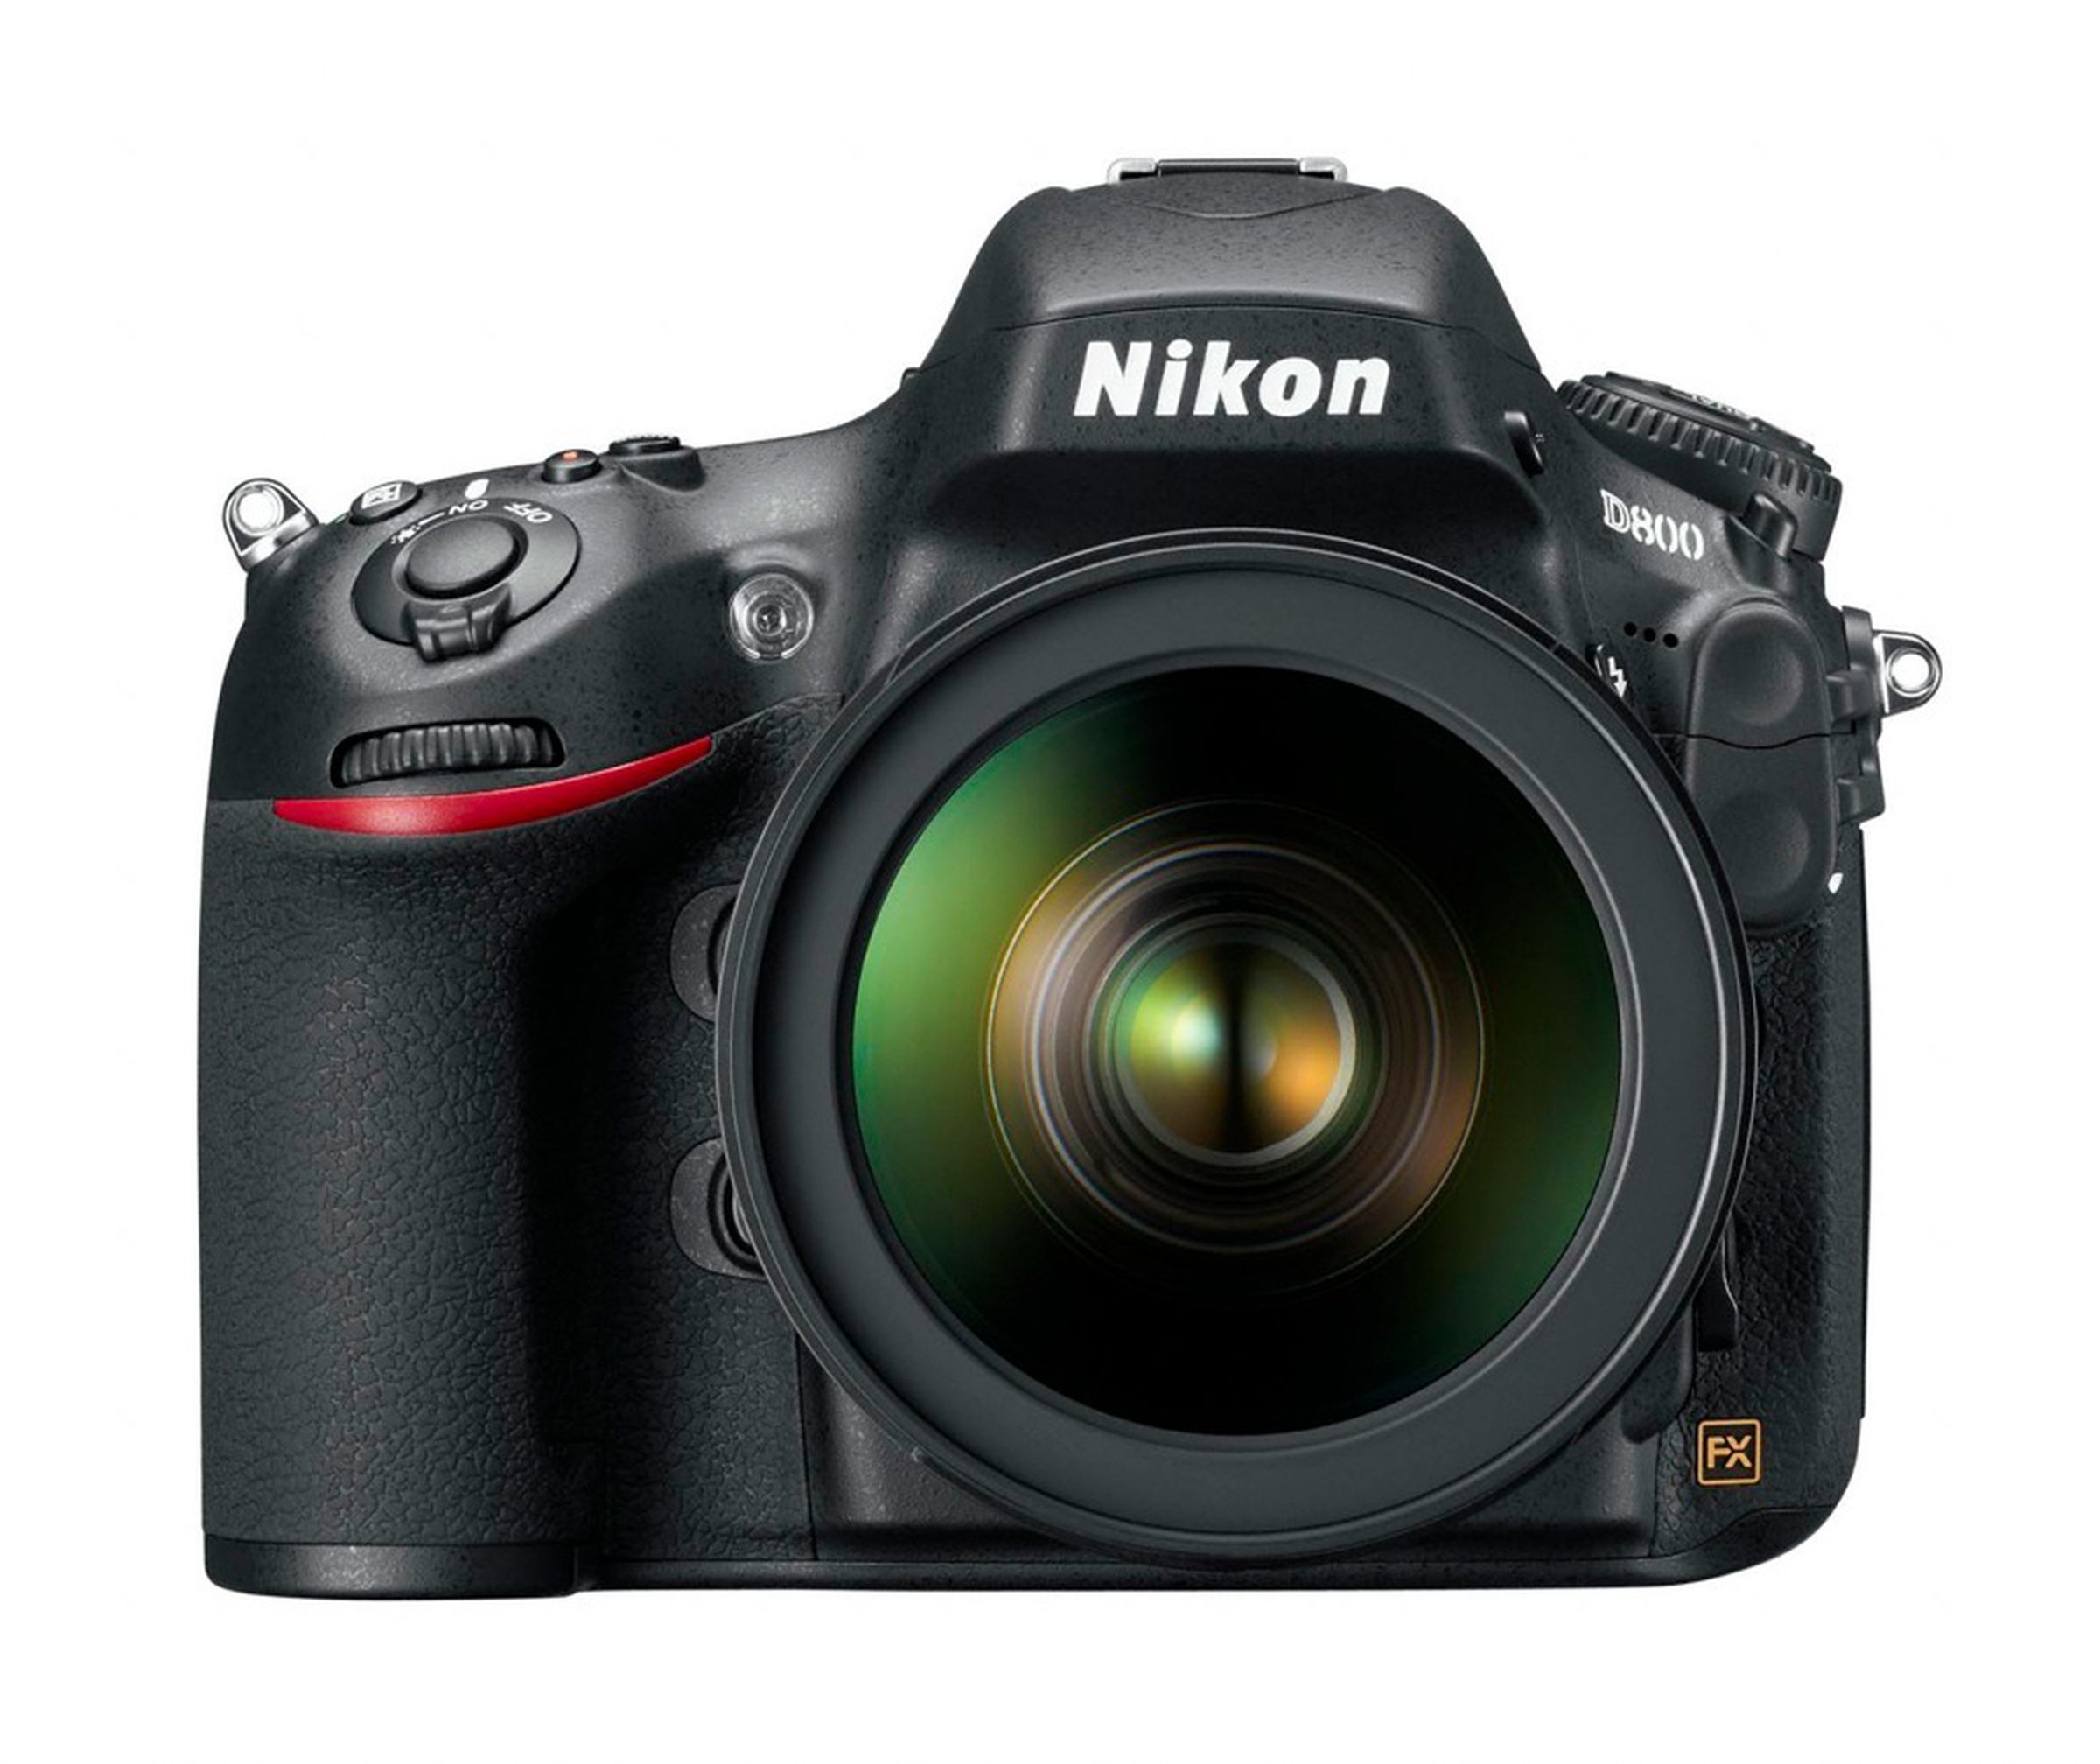 Nikon D800 press pictures